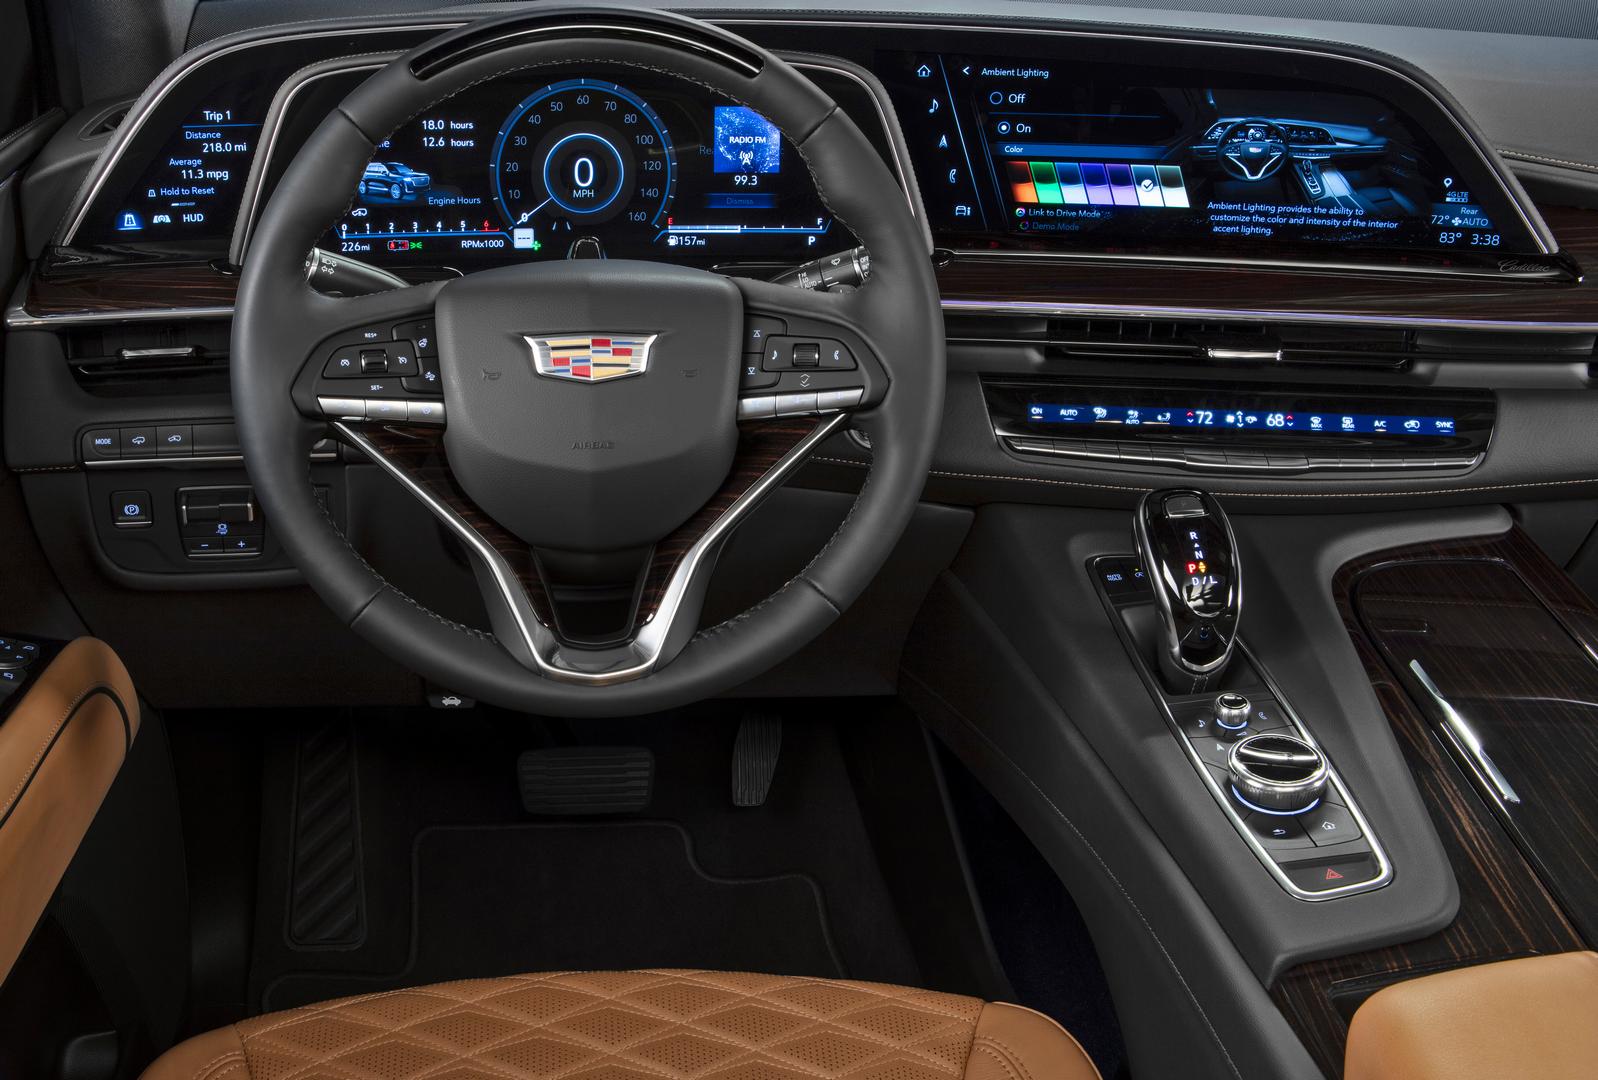 2021 Cadillac Escalade Interior